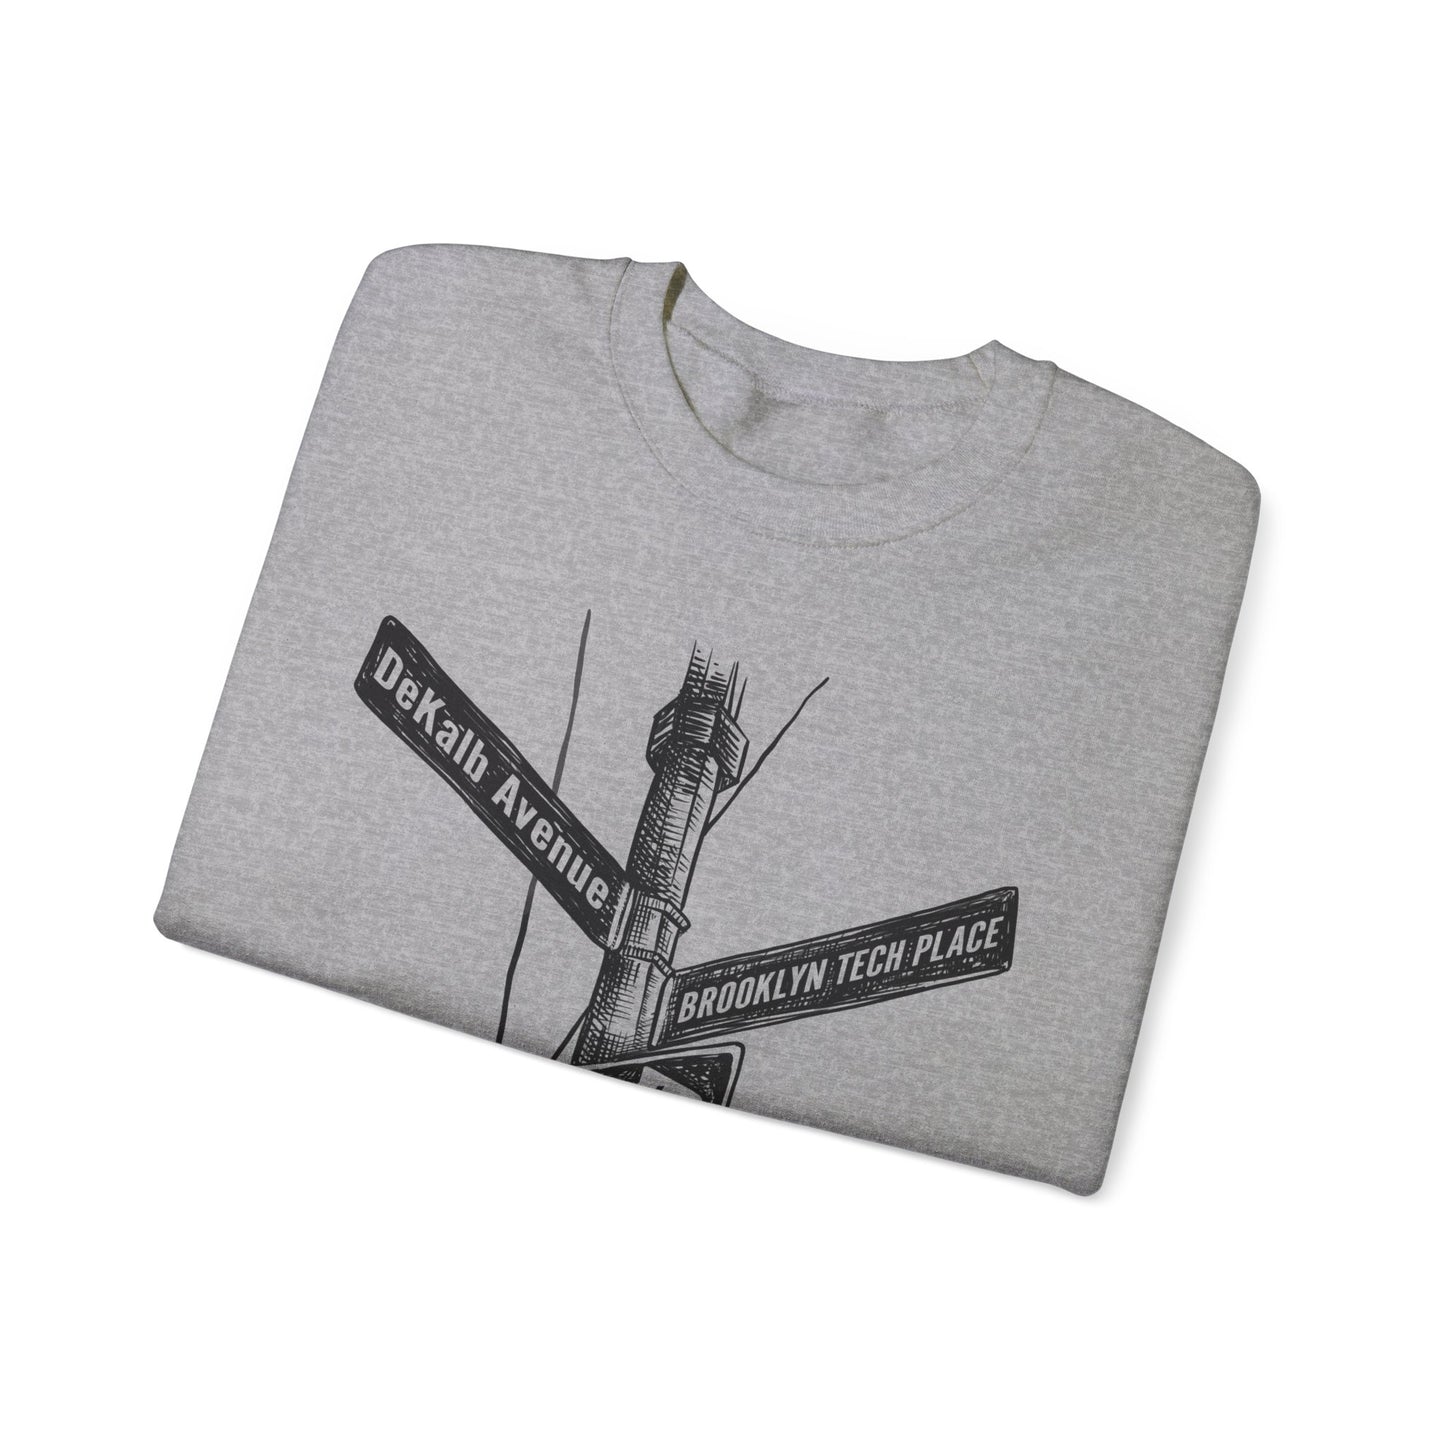 Boutique - Dekalb Ave & Brooklyn Tech Pl - Men's Heavy Blend Crewneck Sweatshirt - Black Graphic